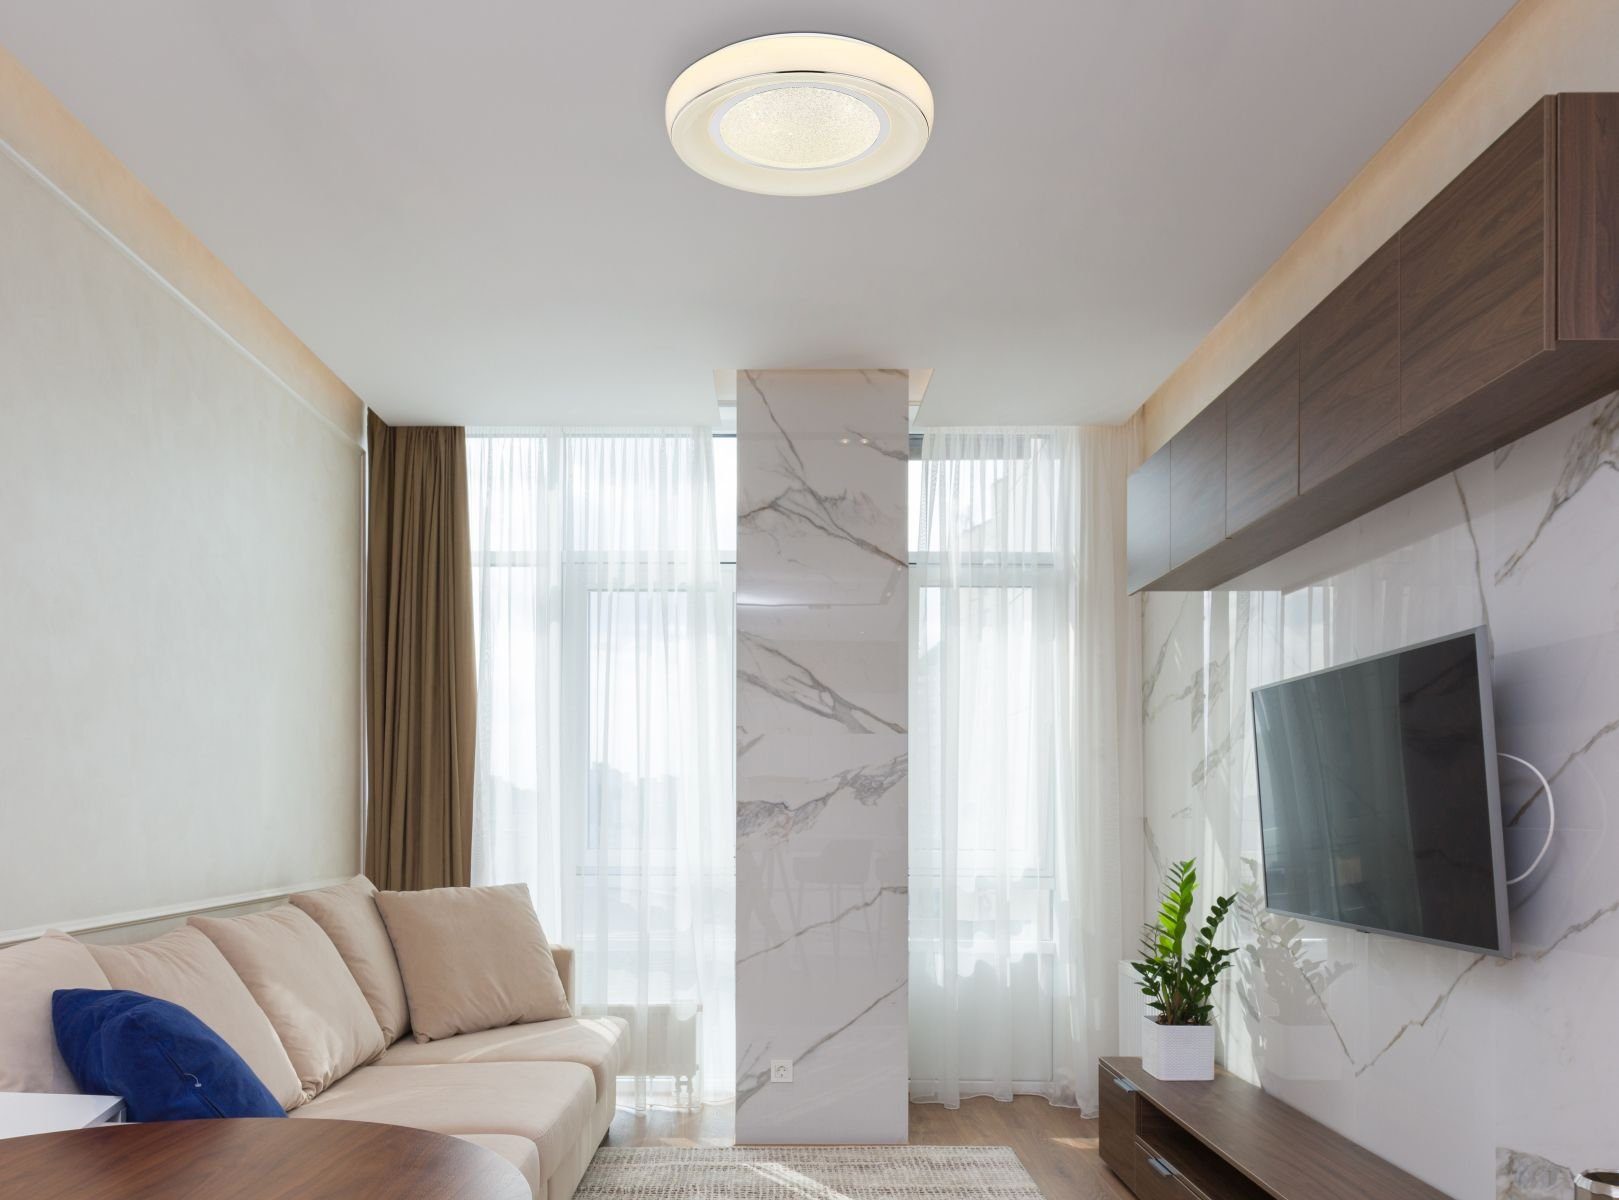 Wohnzimmer LED Globo dimmbar Deckenleuchte Deckenlampe GLOBO Fernbedienung Deckenleuchte